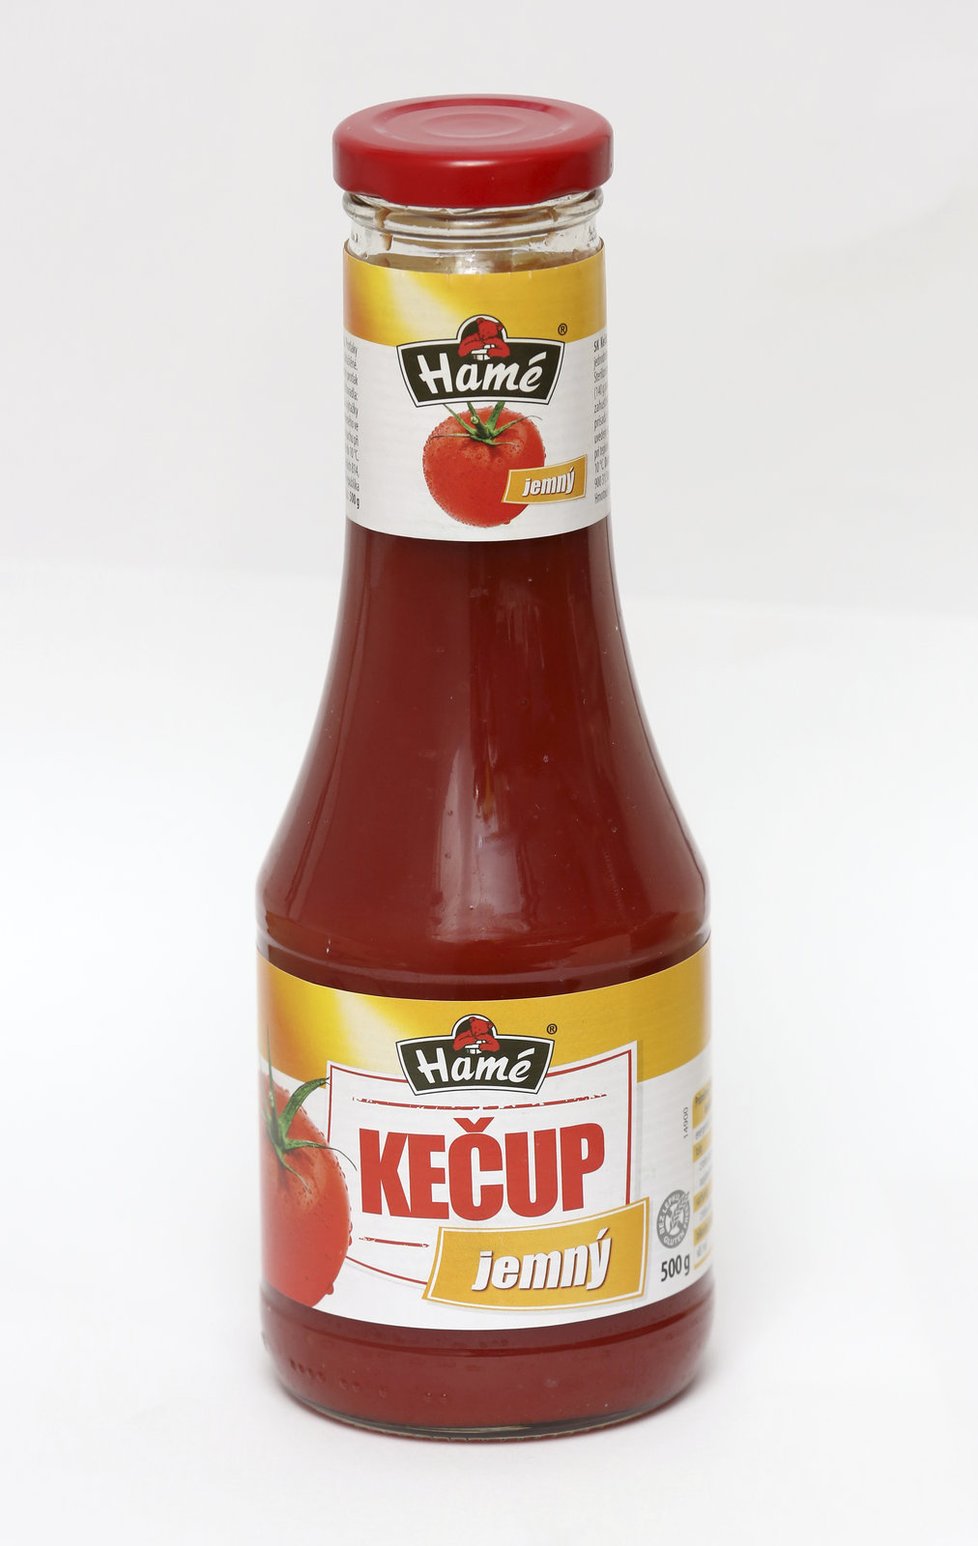 Kečup se z rajčat rozhodně nevyráběl.